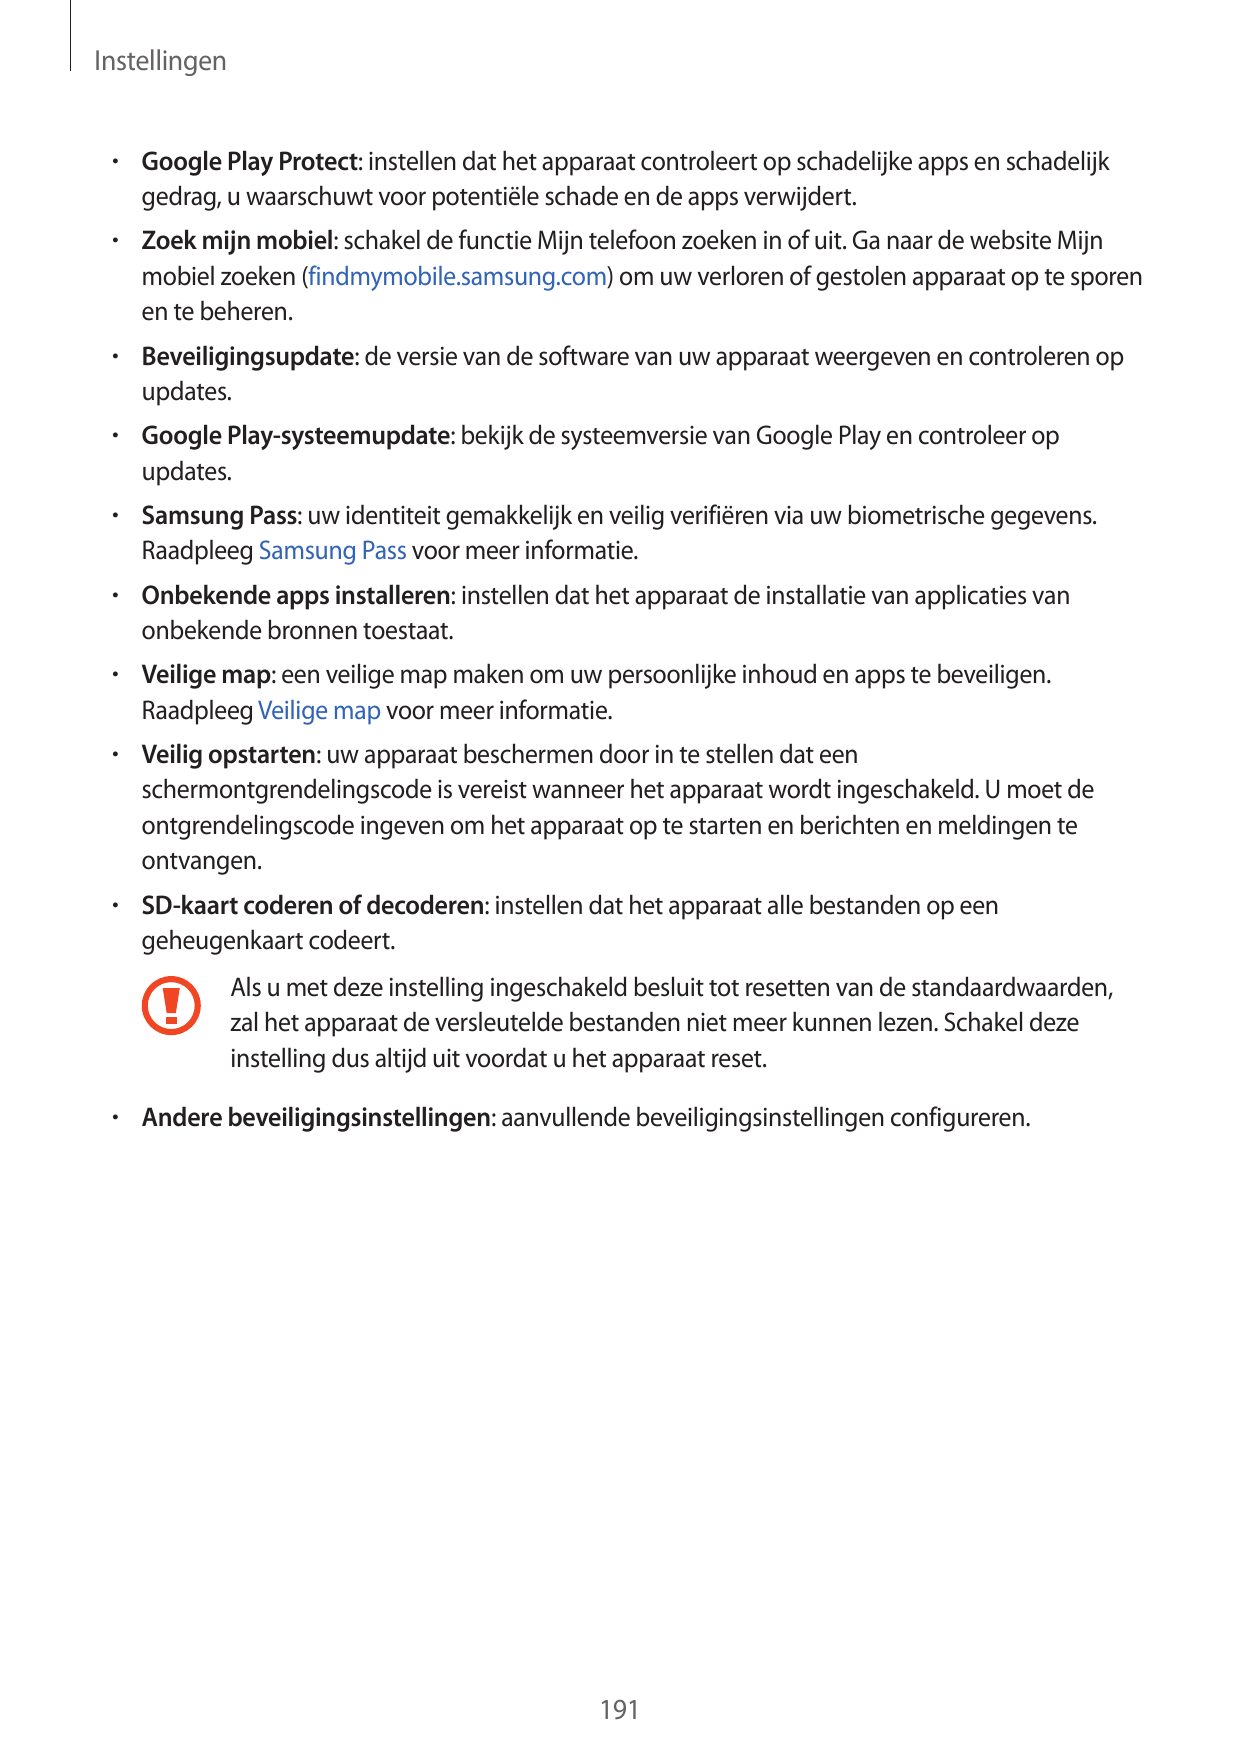 Instellingen• Google Play Protect: instellen dat het apparaat controleert op schadelijke apps en schadelijkgedrag, u waarschuwt 